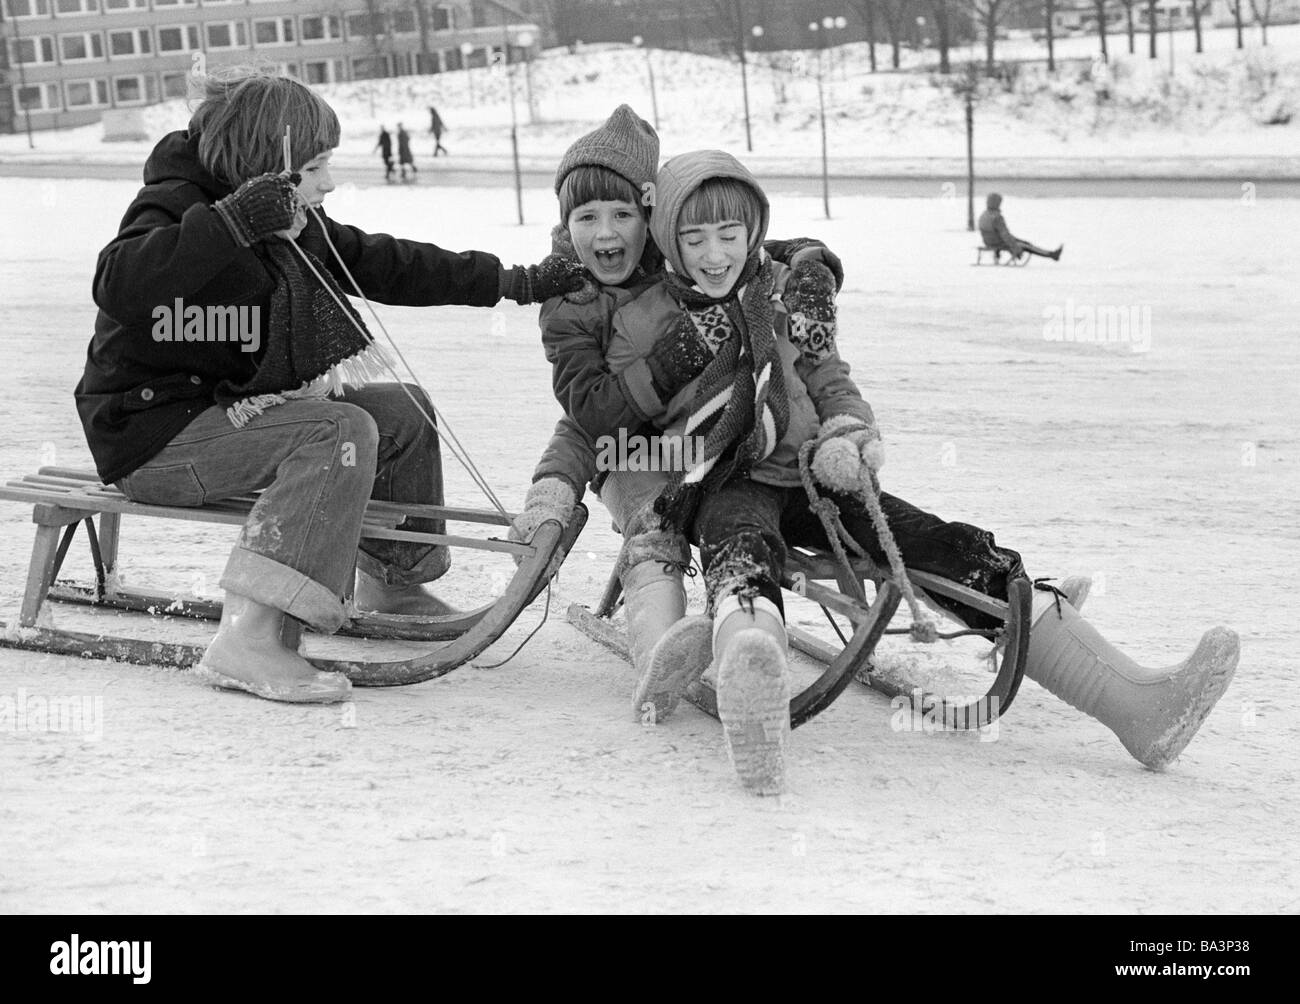 Negli anni settanta, foto in bianco e nero, inverno, meteo, neve bambini con bobsleds, boy, ragazza, di età compresa tra i 6 e i 10 anni, D-Dorsten, LIPPE, riserva naturale di Hohe Mark, la zona della Ruhr, Muensterland, Renania settentrionale-Vestfalia Foto Stock